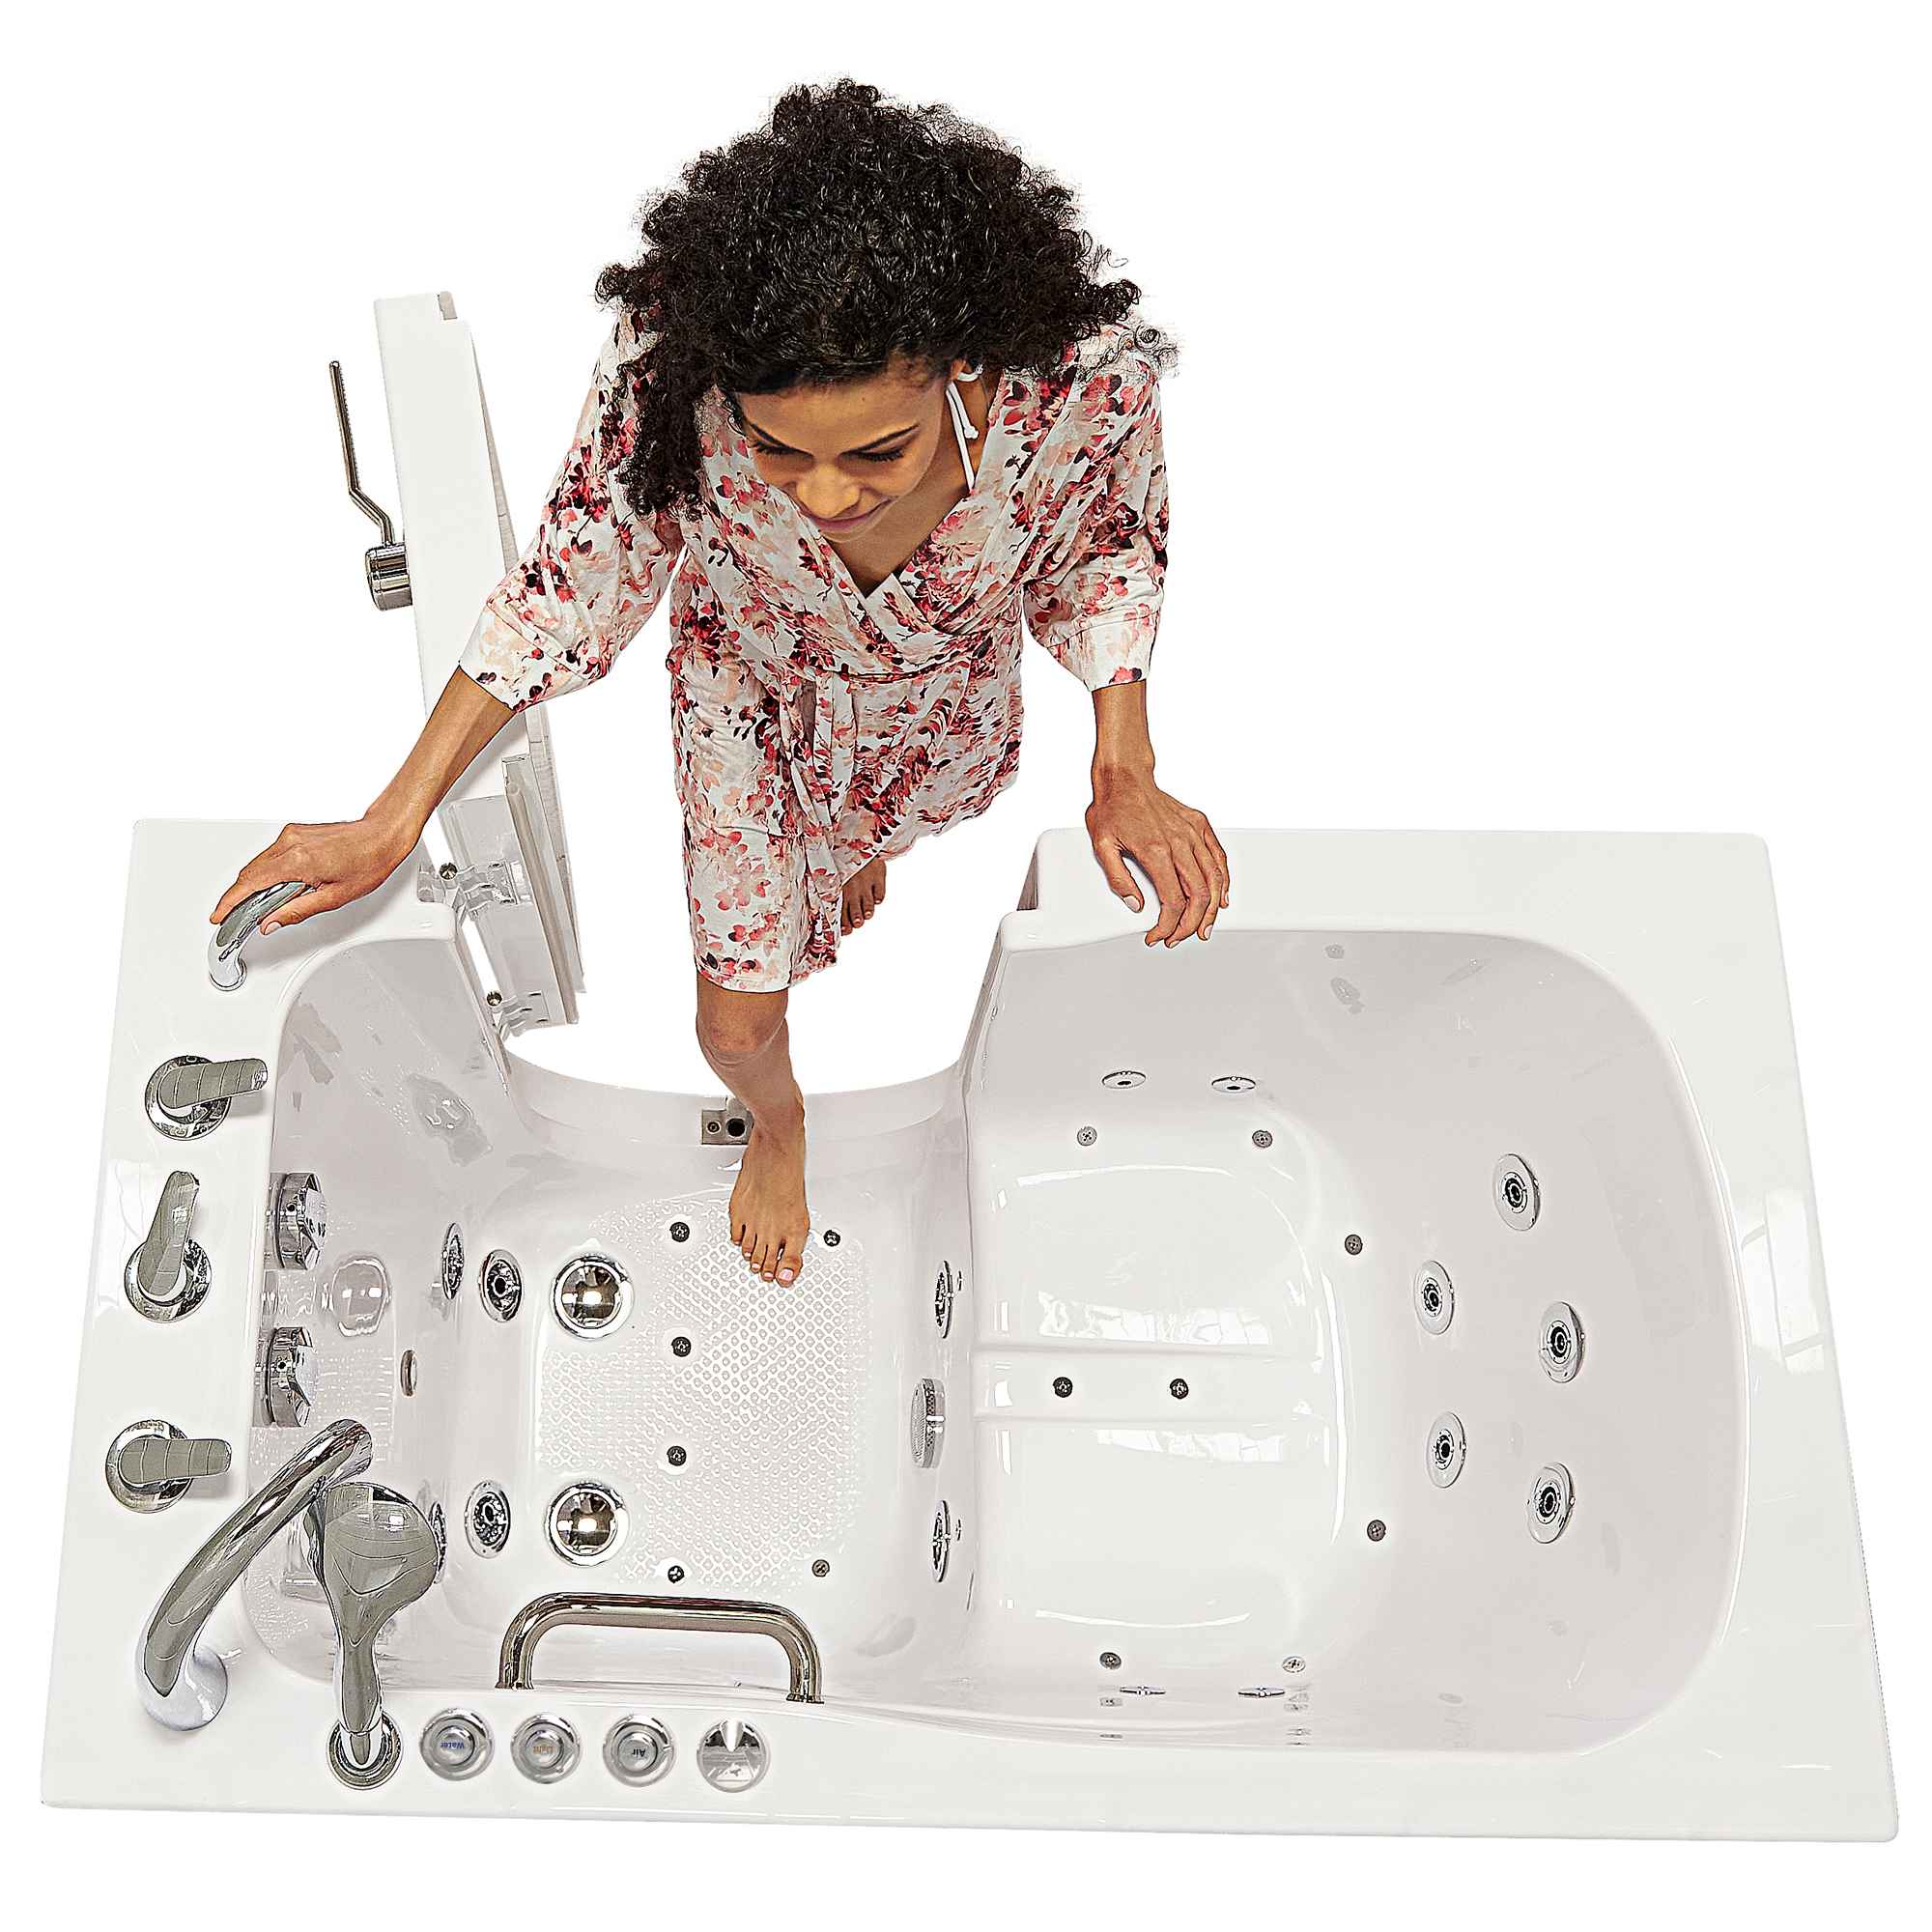 Ella Capri 30"x52" Acrylic Air and Hydro Massage Walk-In Bathtub with Outward Swing Door, 5 Piece Fast Fill Faucet, 2" Dual Drain Bath Tub Ella's Bubbles   